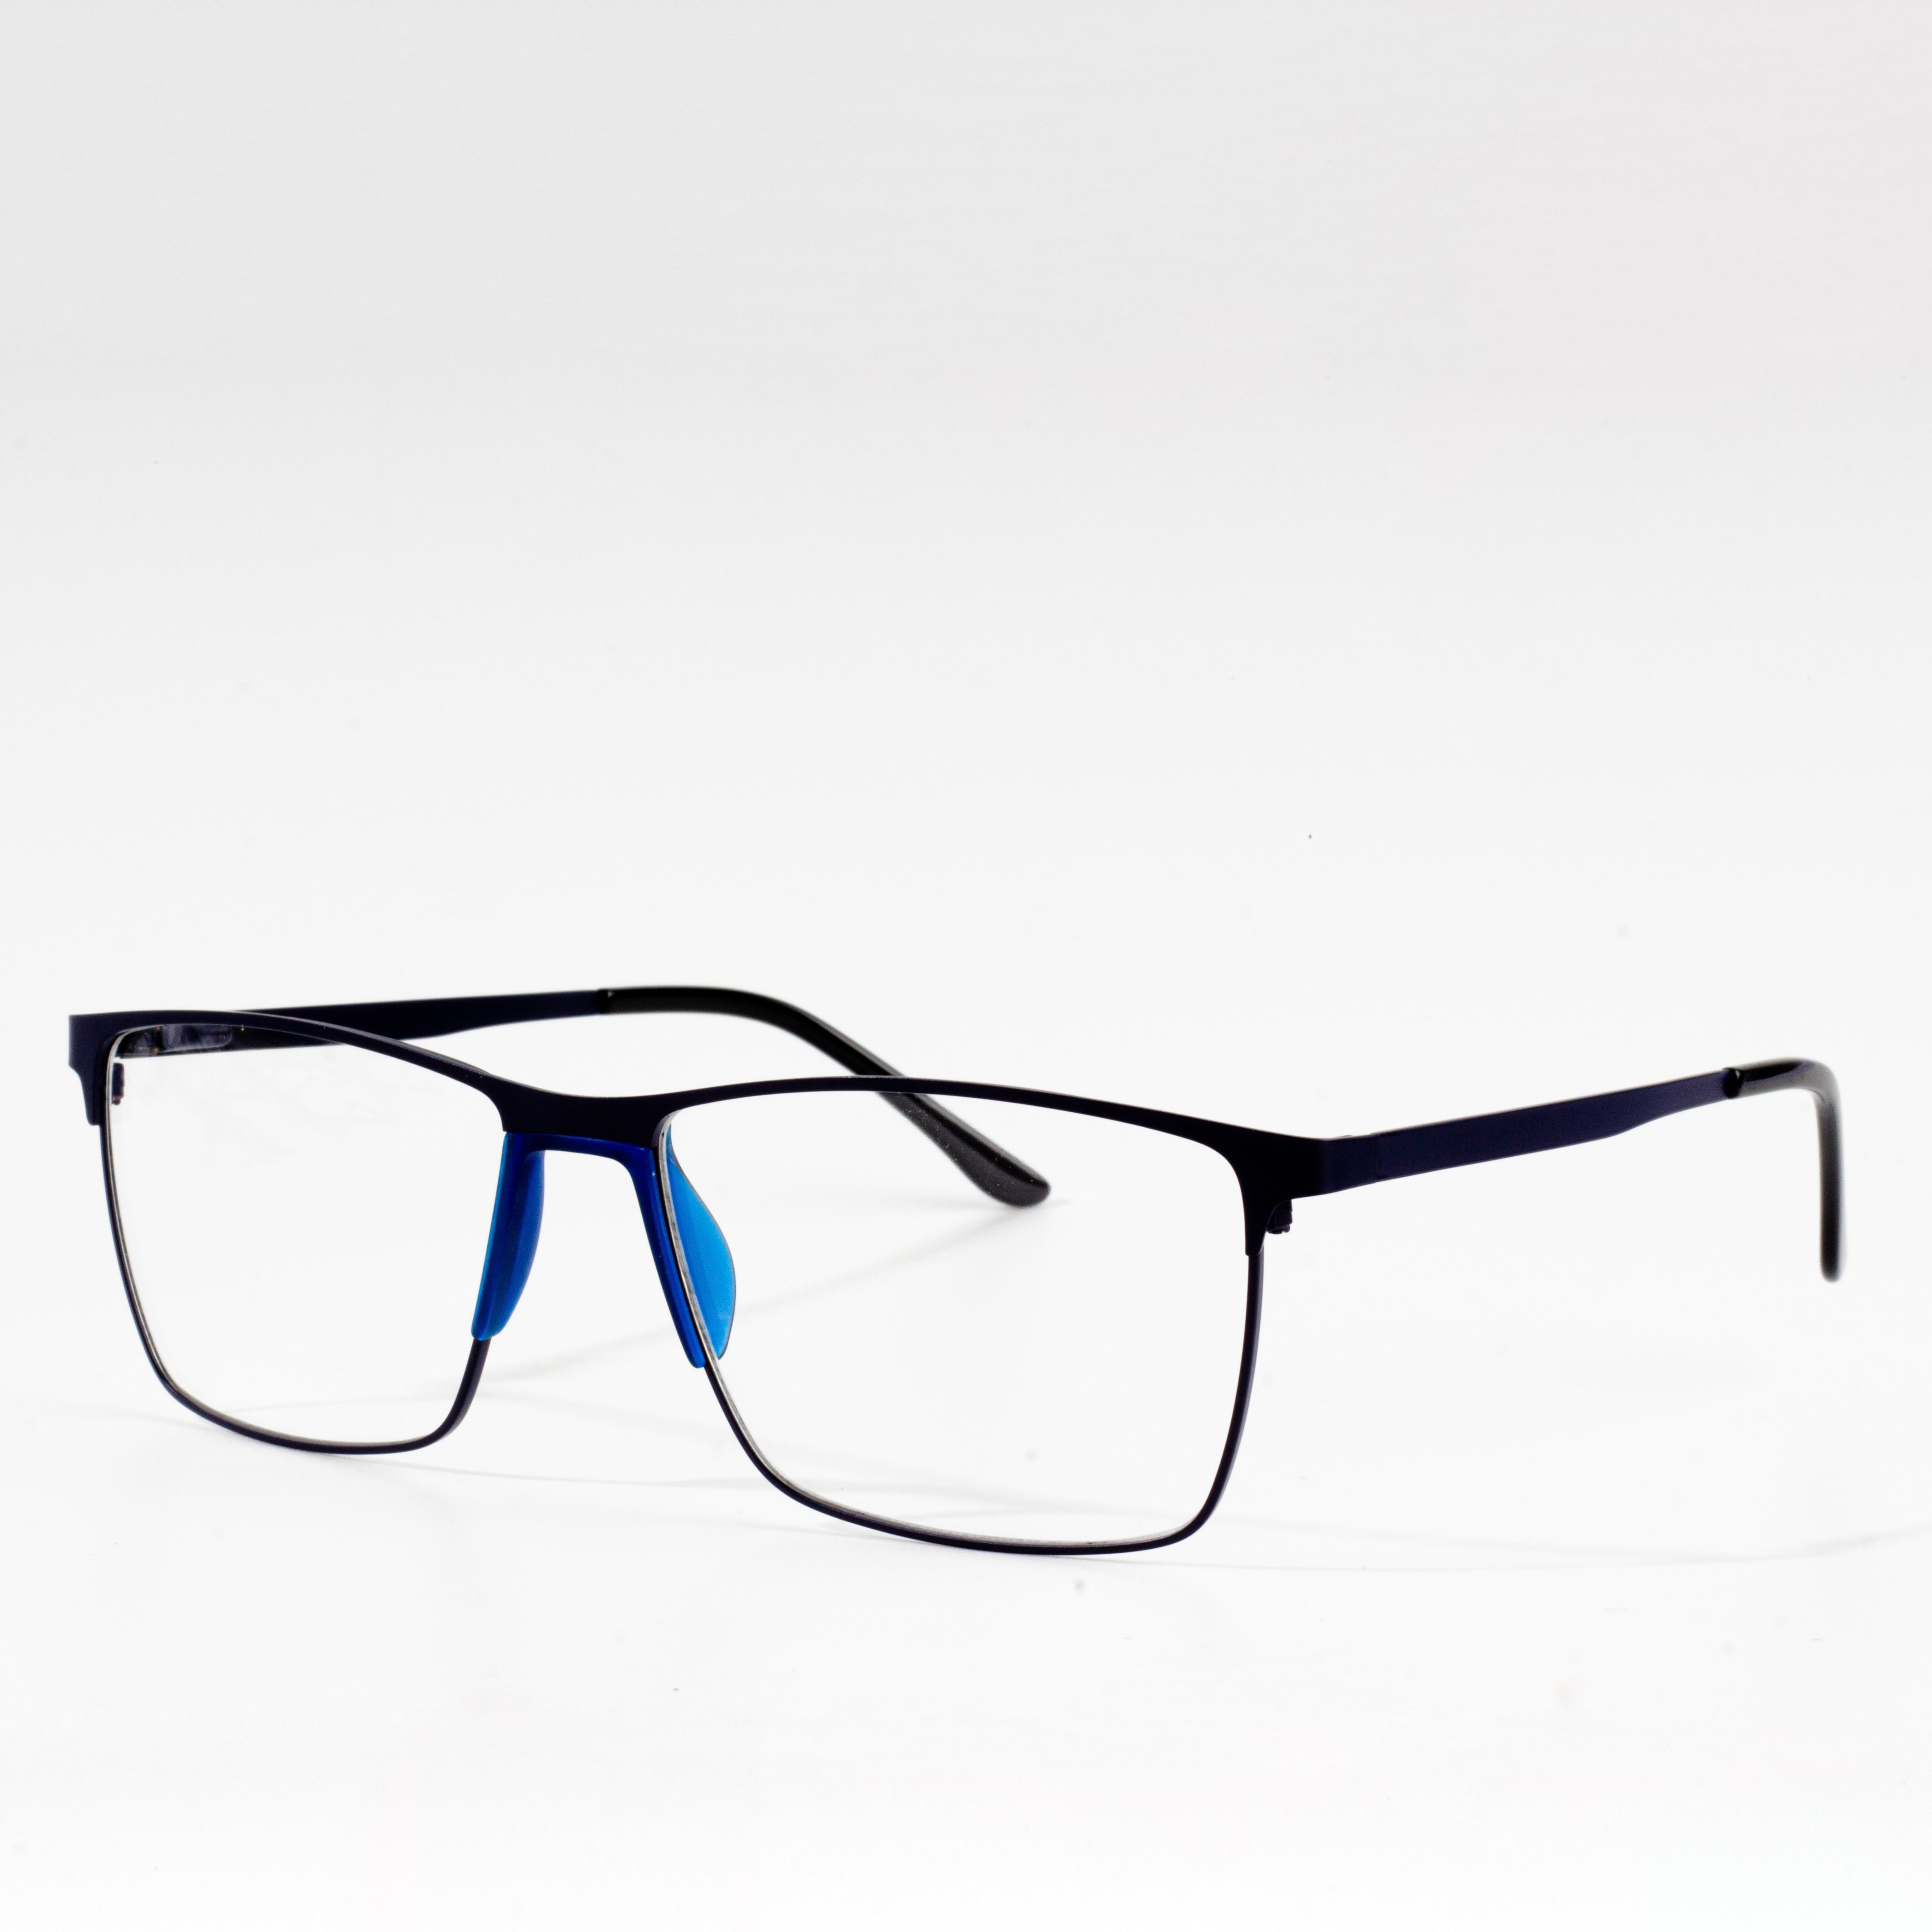 frames for eyeglasses